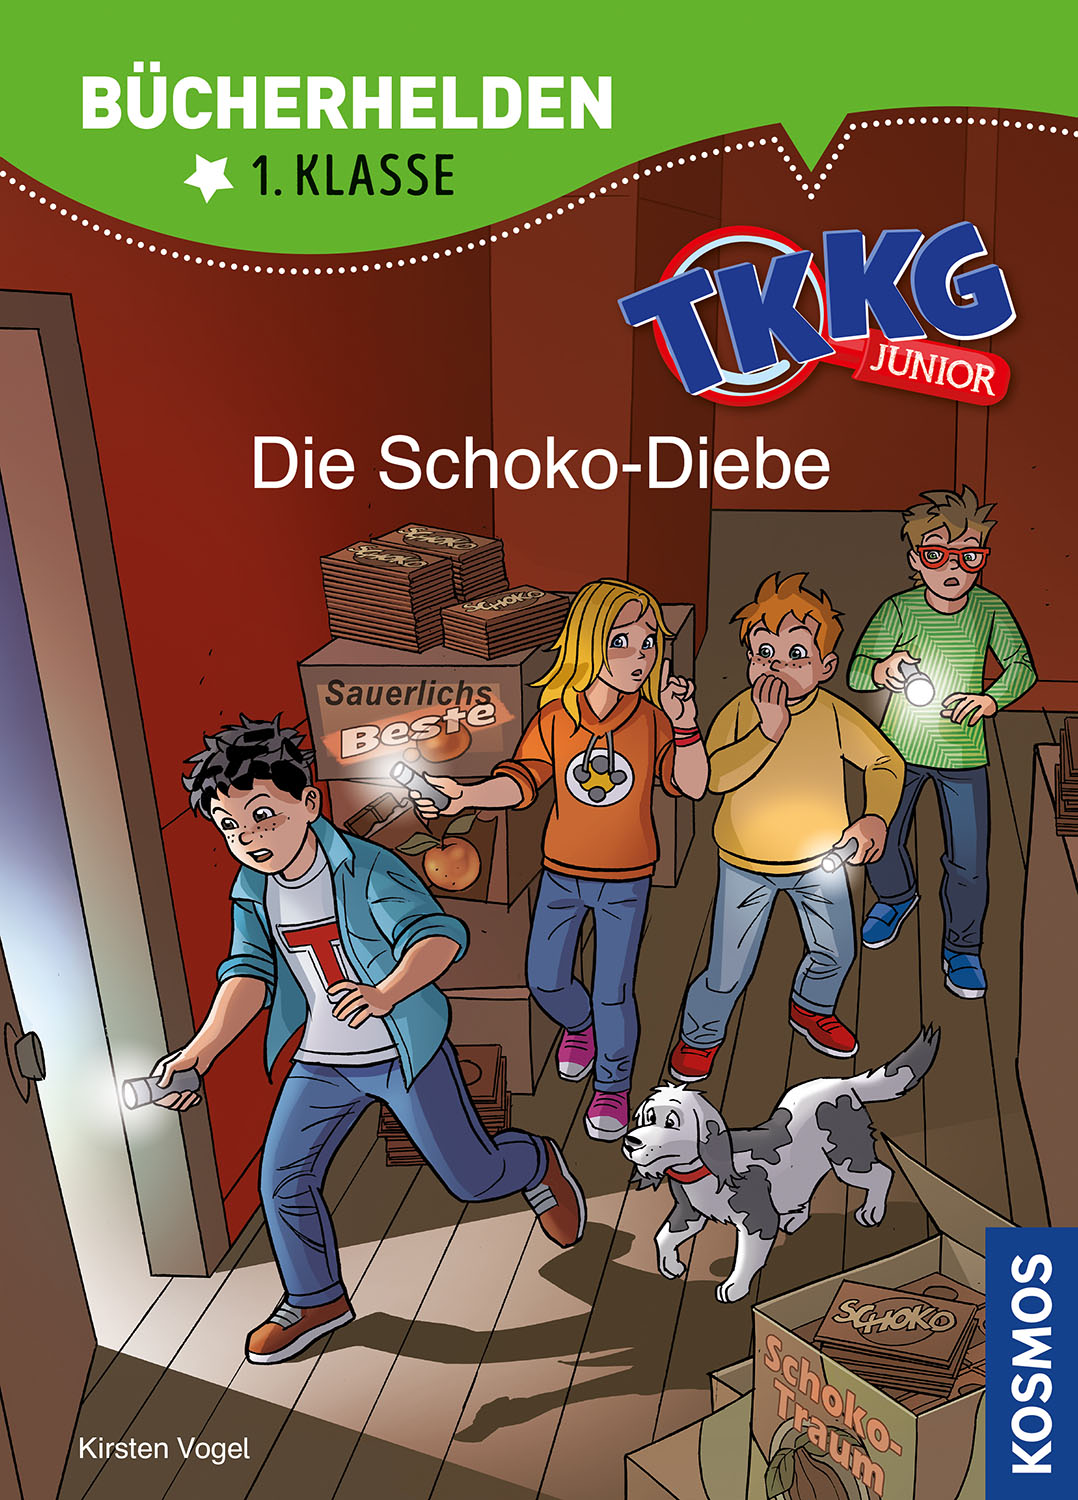 TKKG Junior Erstleser- Die Schoko-Diebe